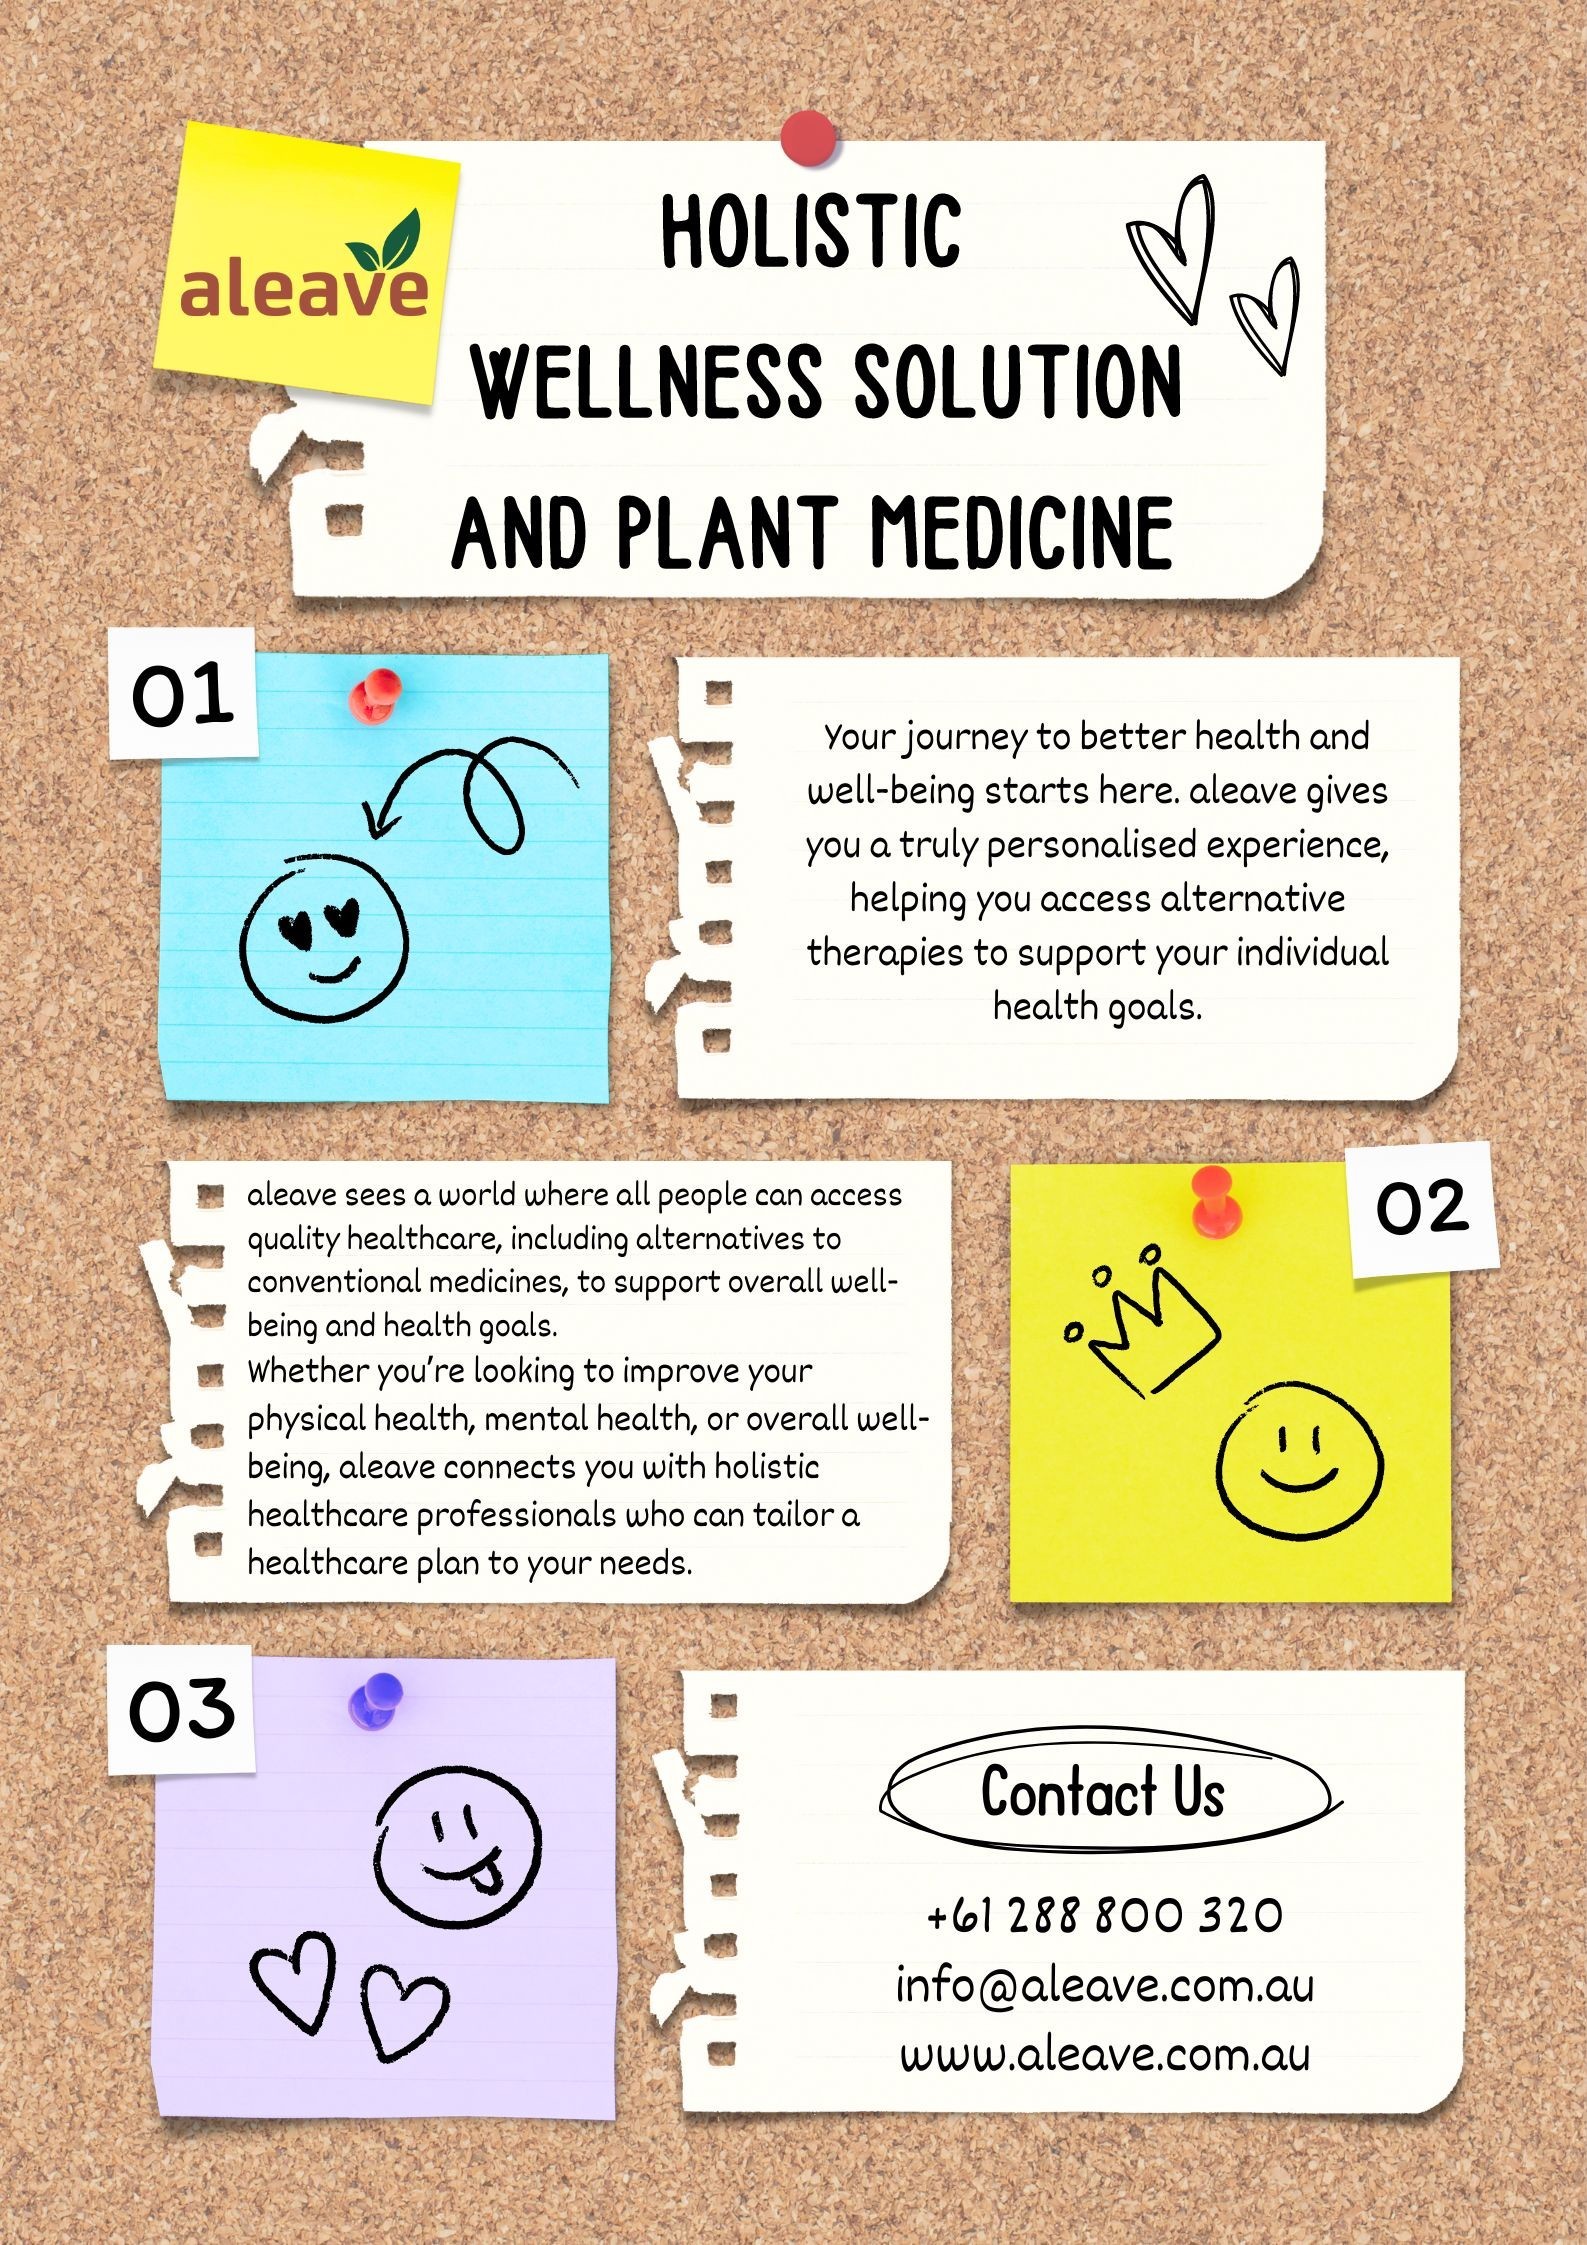 Holistic Wellness Solution and Plant Medicine - aleave.com.au